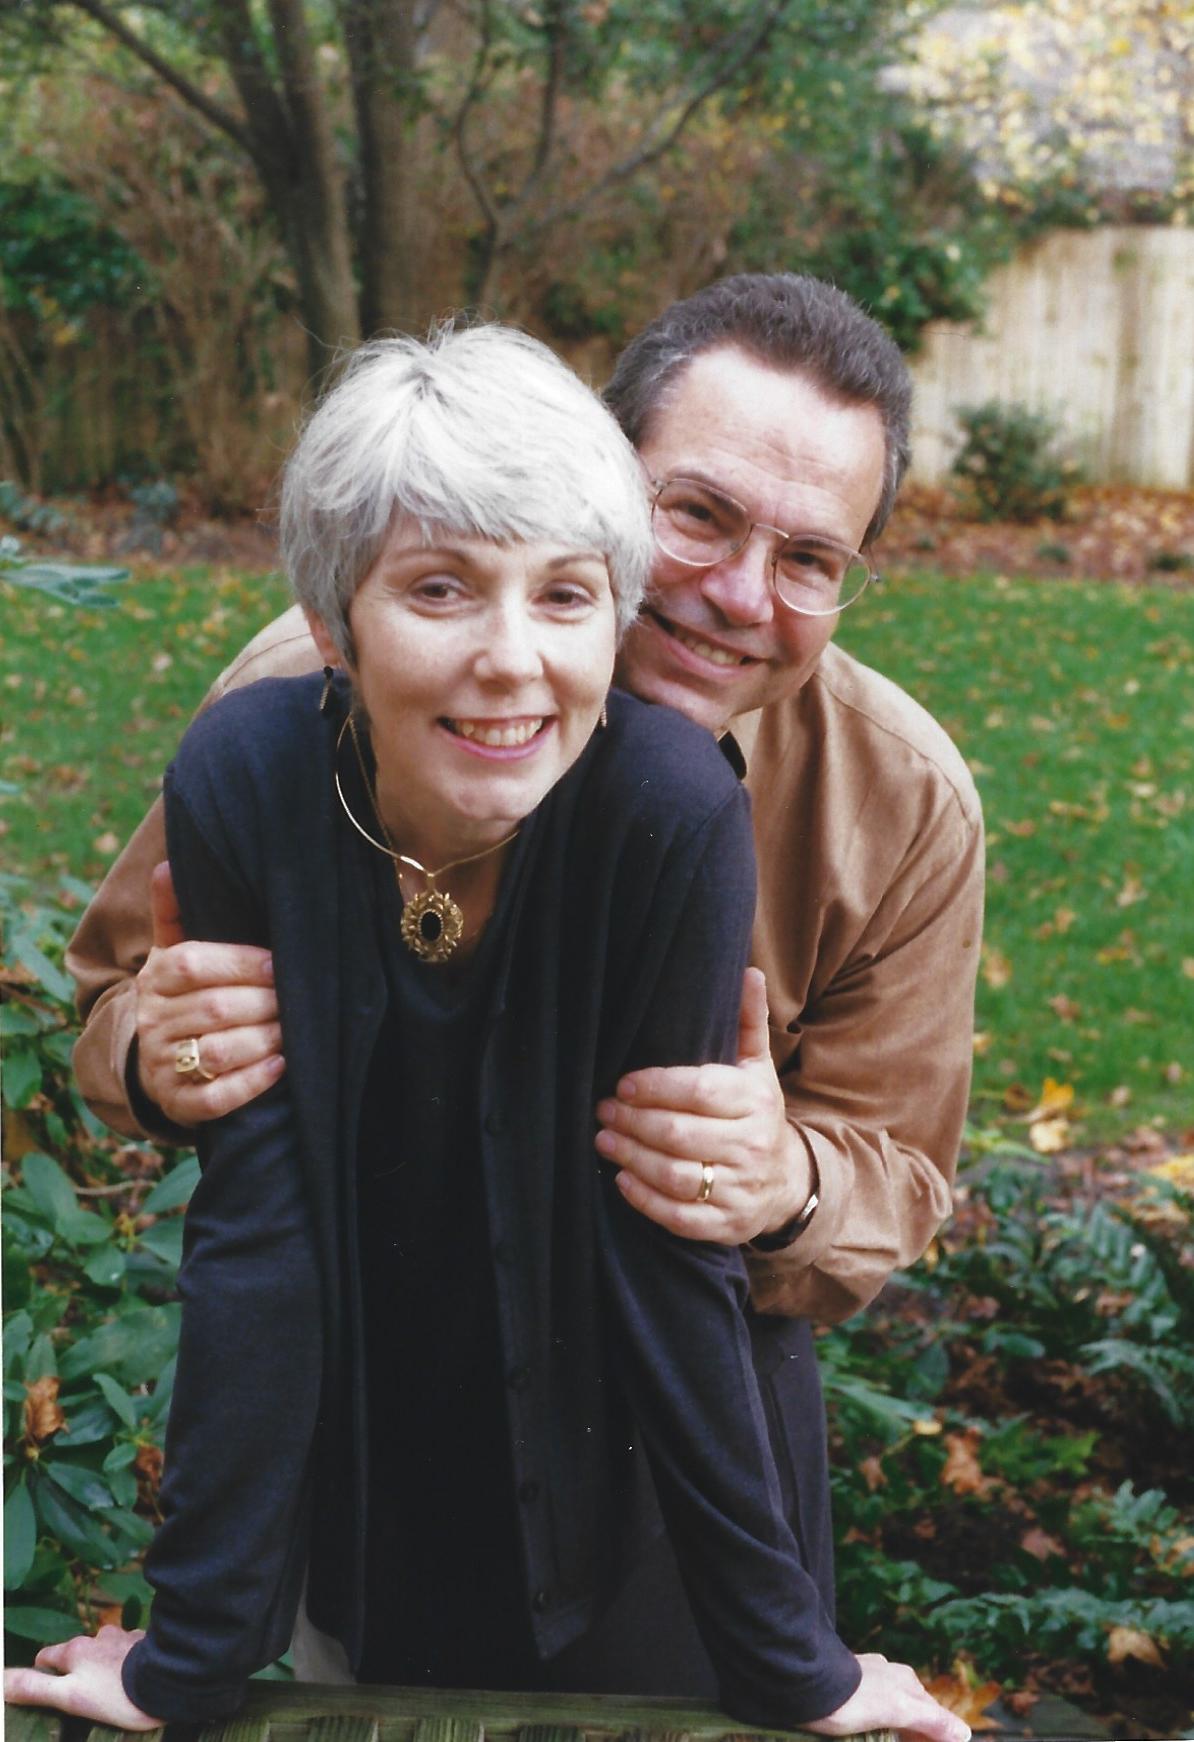 Maureen and Paul Flanagan